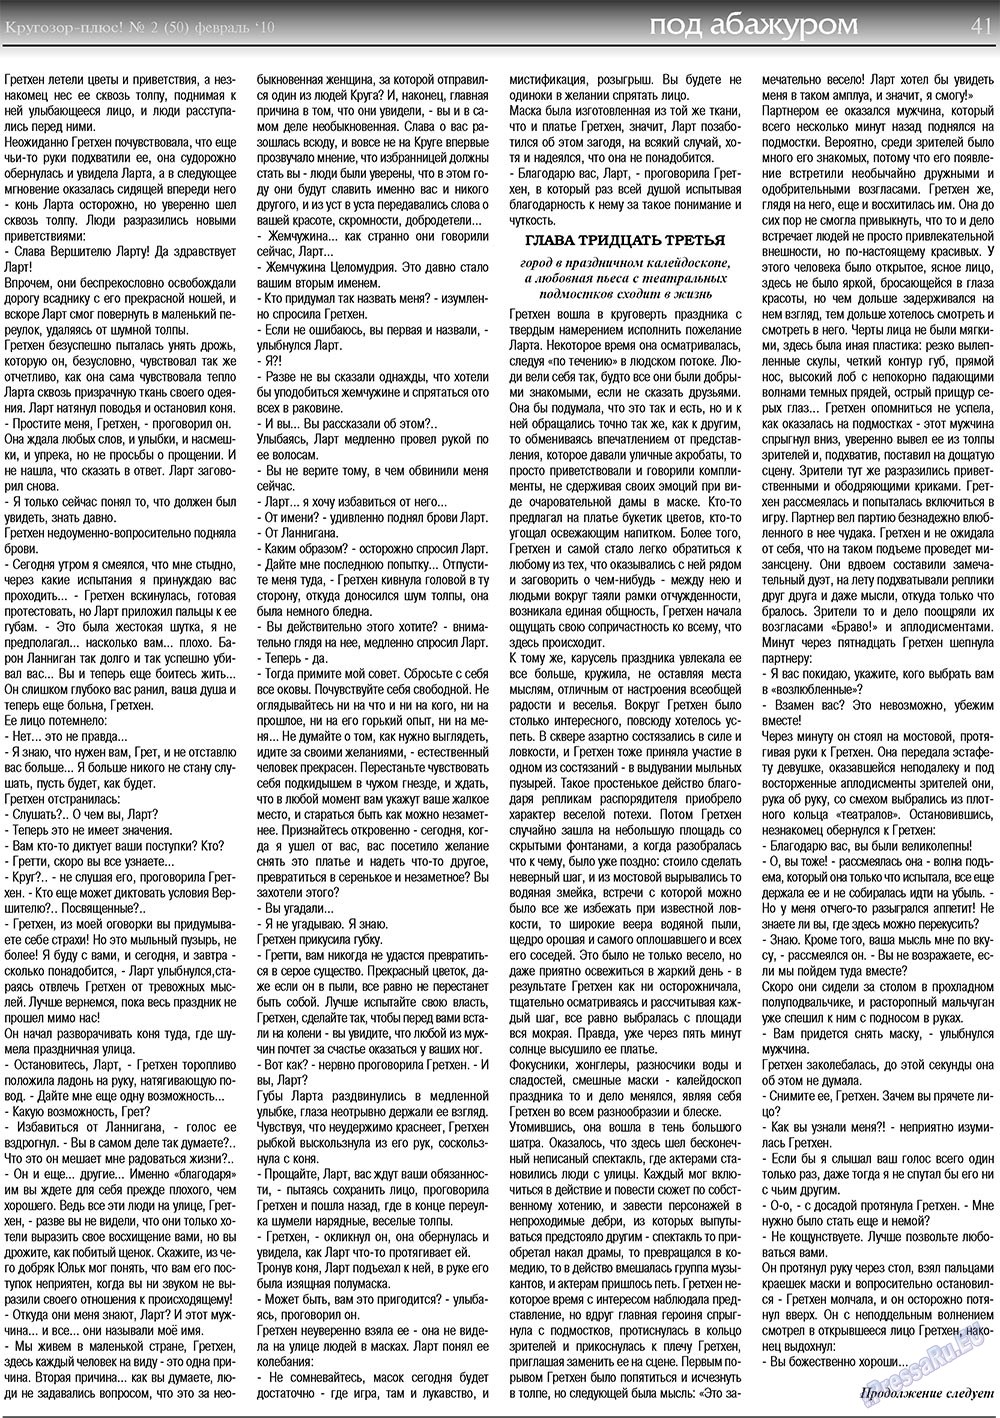 Кругозор плюс!, газета. 2010 №2 стр.41